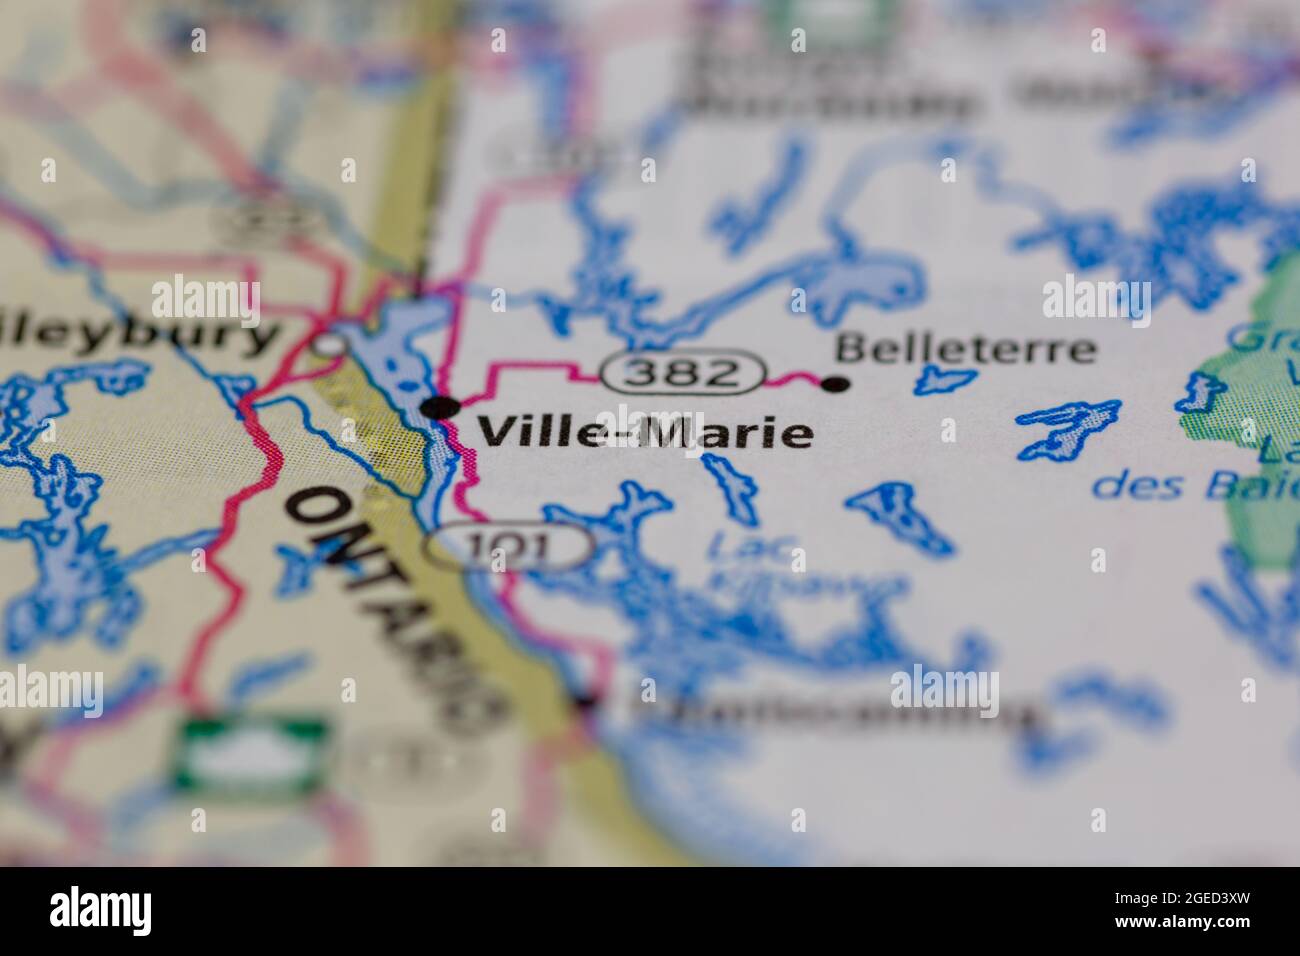 Ville-Marie Quebec Canada aparece en un mapa de carreteras o en un mapa geográfico Foto de stock